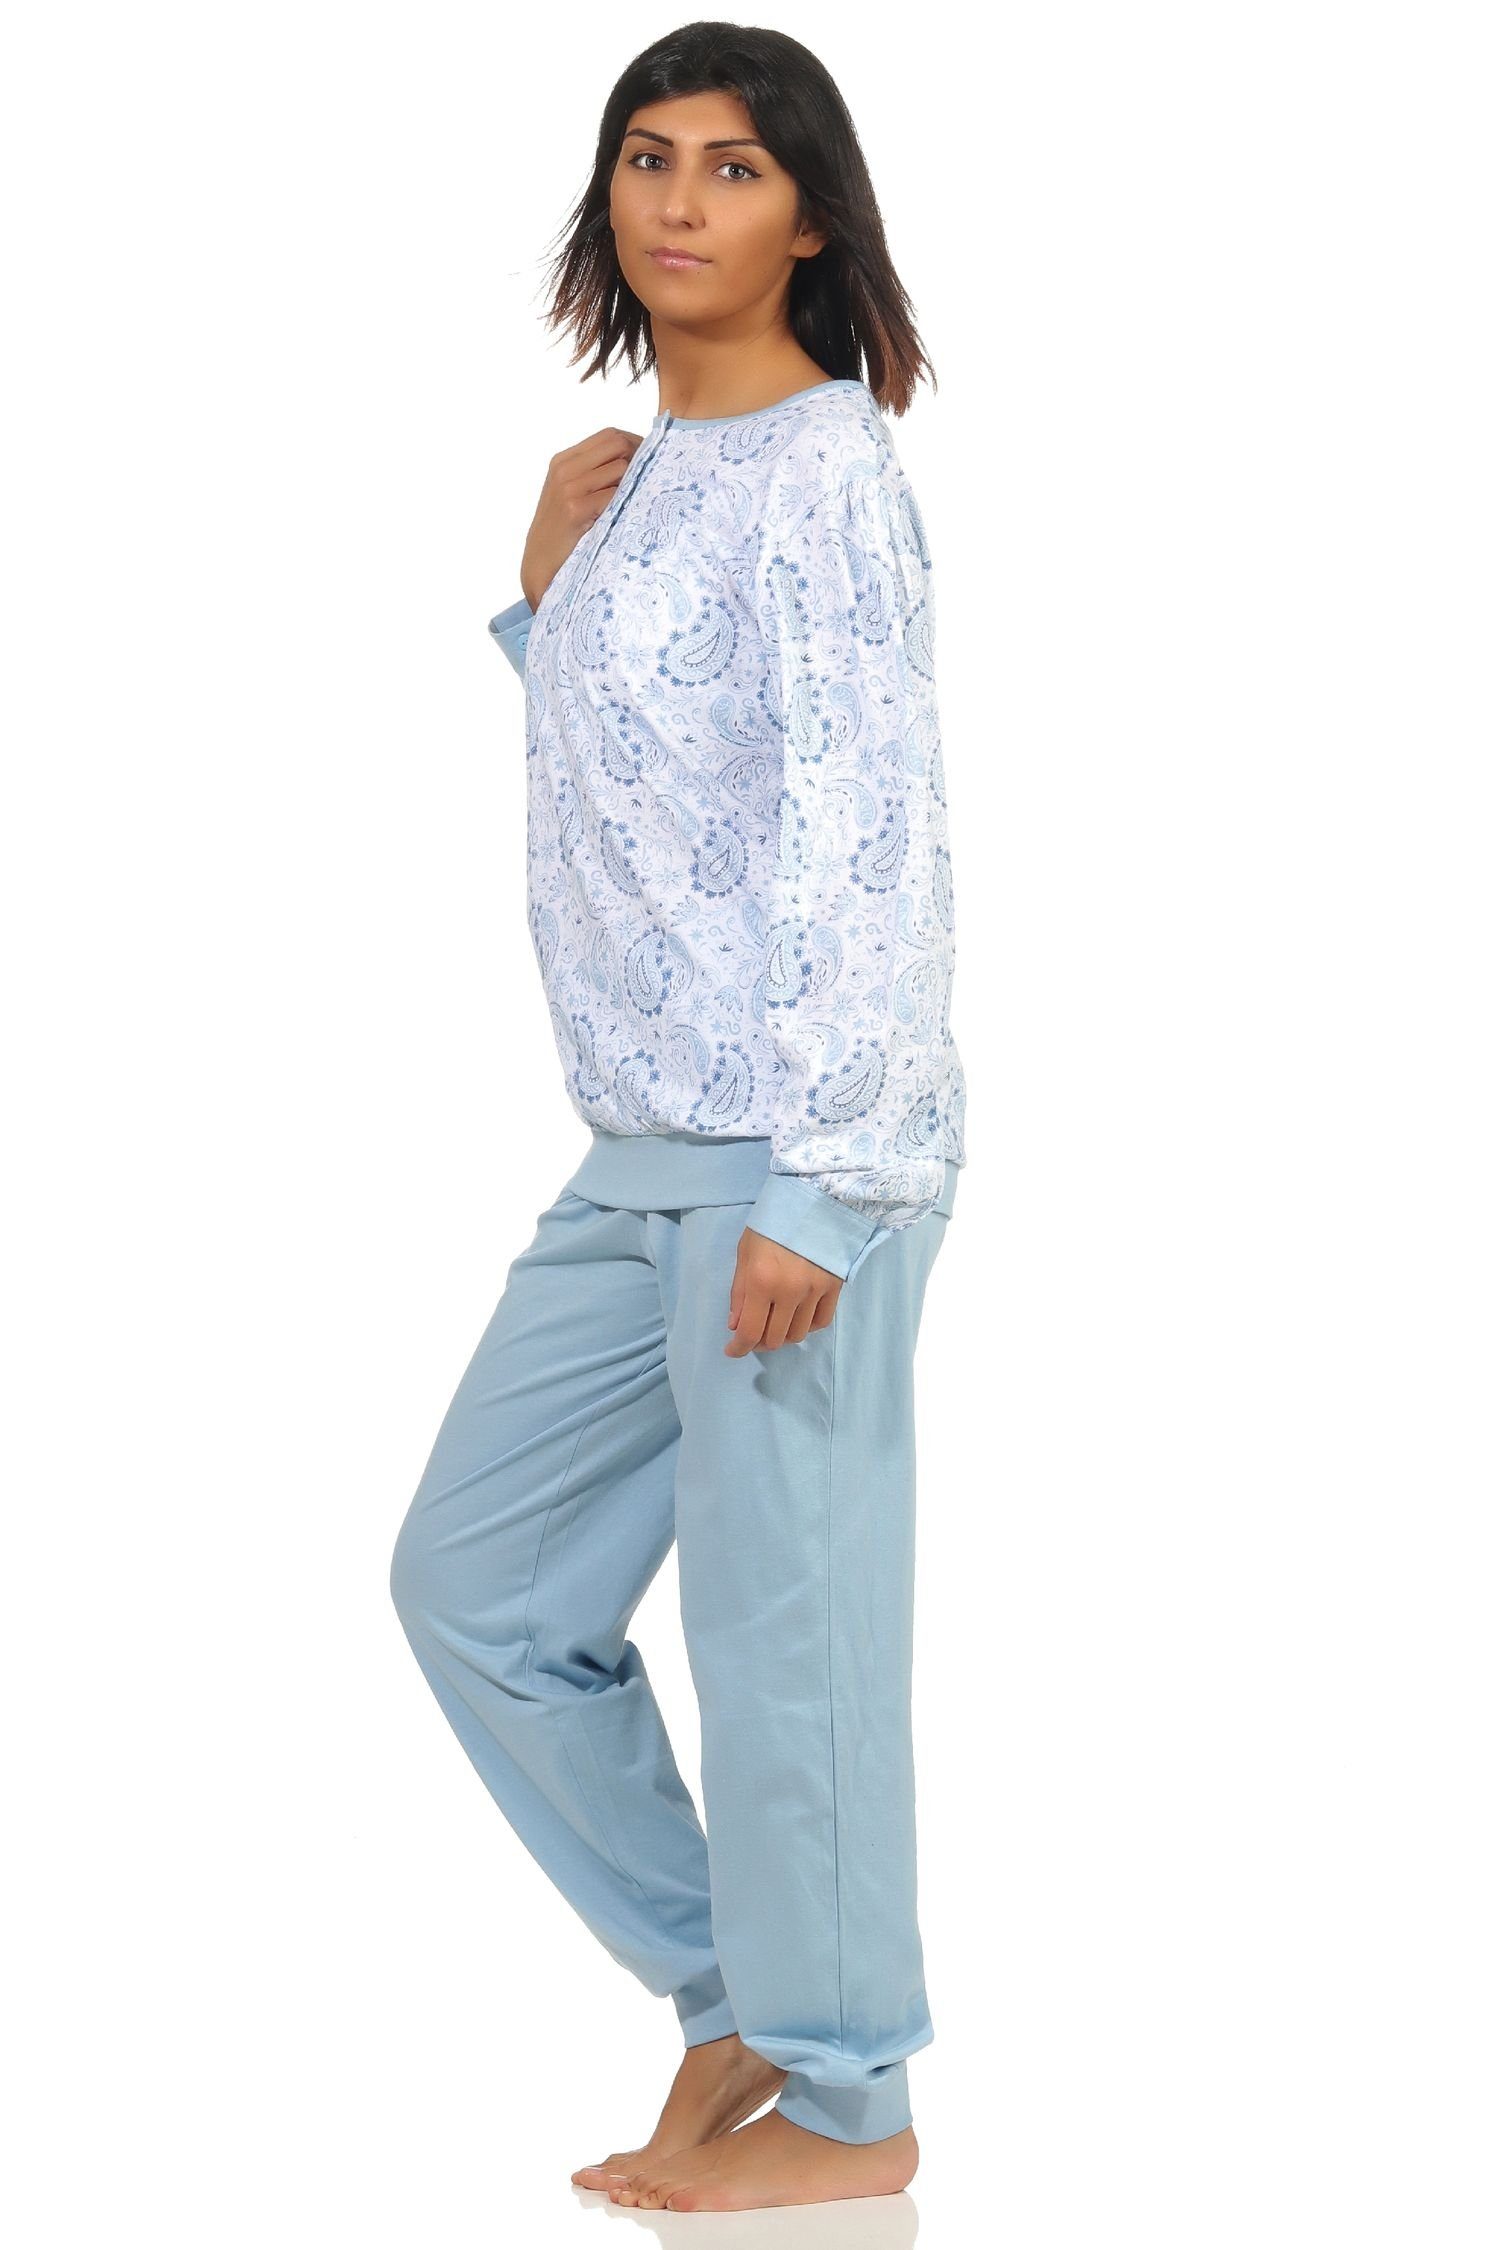 Wäsche/Bademode Pyjamas Normann Pyjama Eleganter Damen Pyjama Schlafanzug mit Bündchen und Knopfleiste am Hals - 202 201 90 351